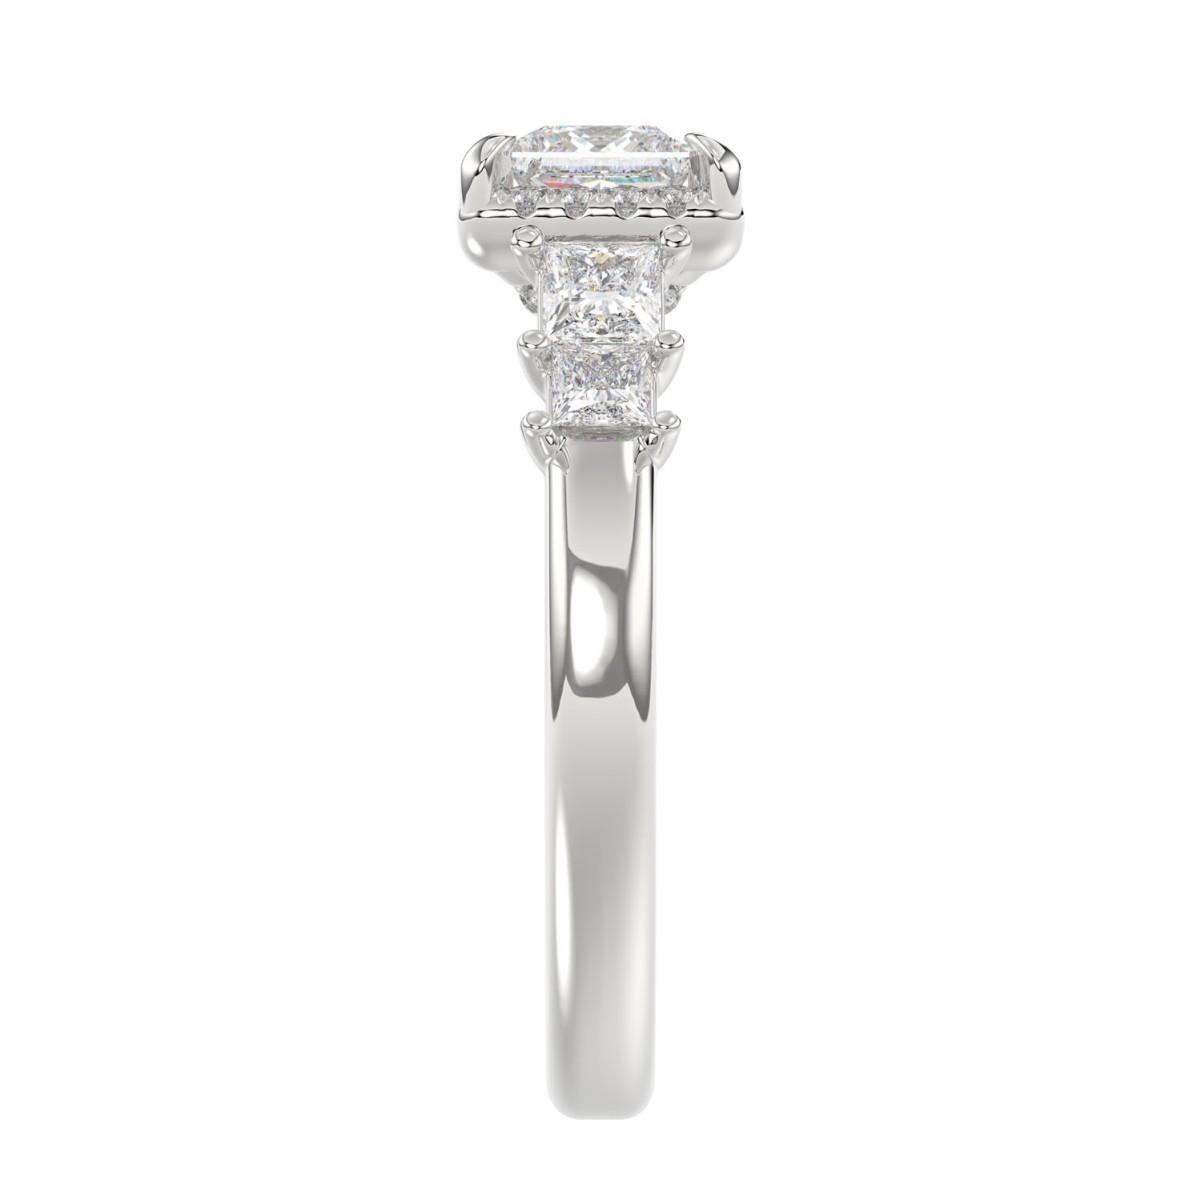 14K WHITE GOLD 1 1/2CT ROUND/PRINCESS DIAMOND LADIES RING( CENTER STONE PRINCESS DIAMOND 3/4 CT)